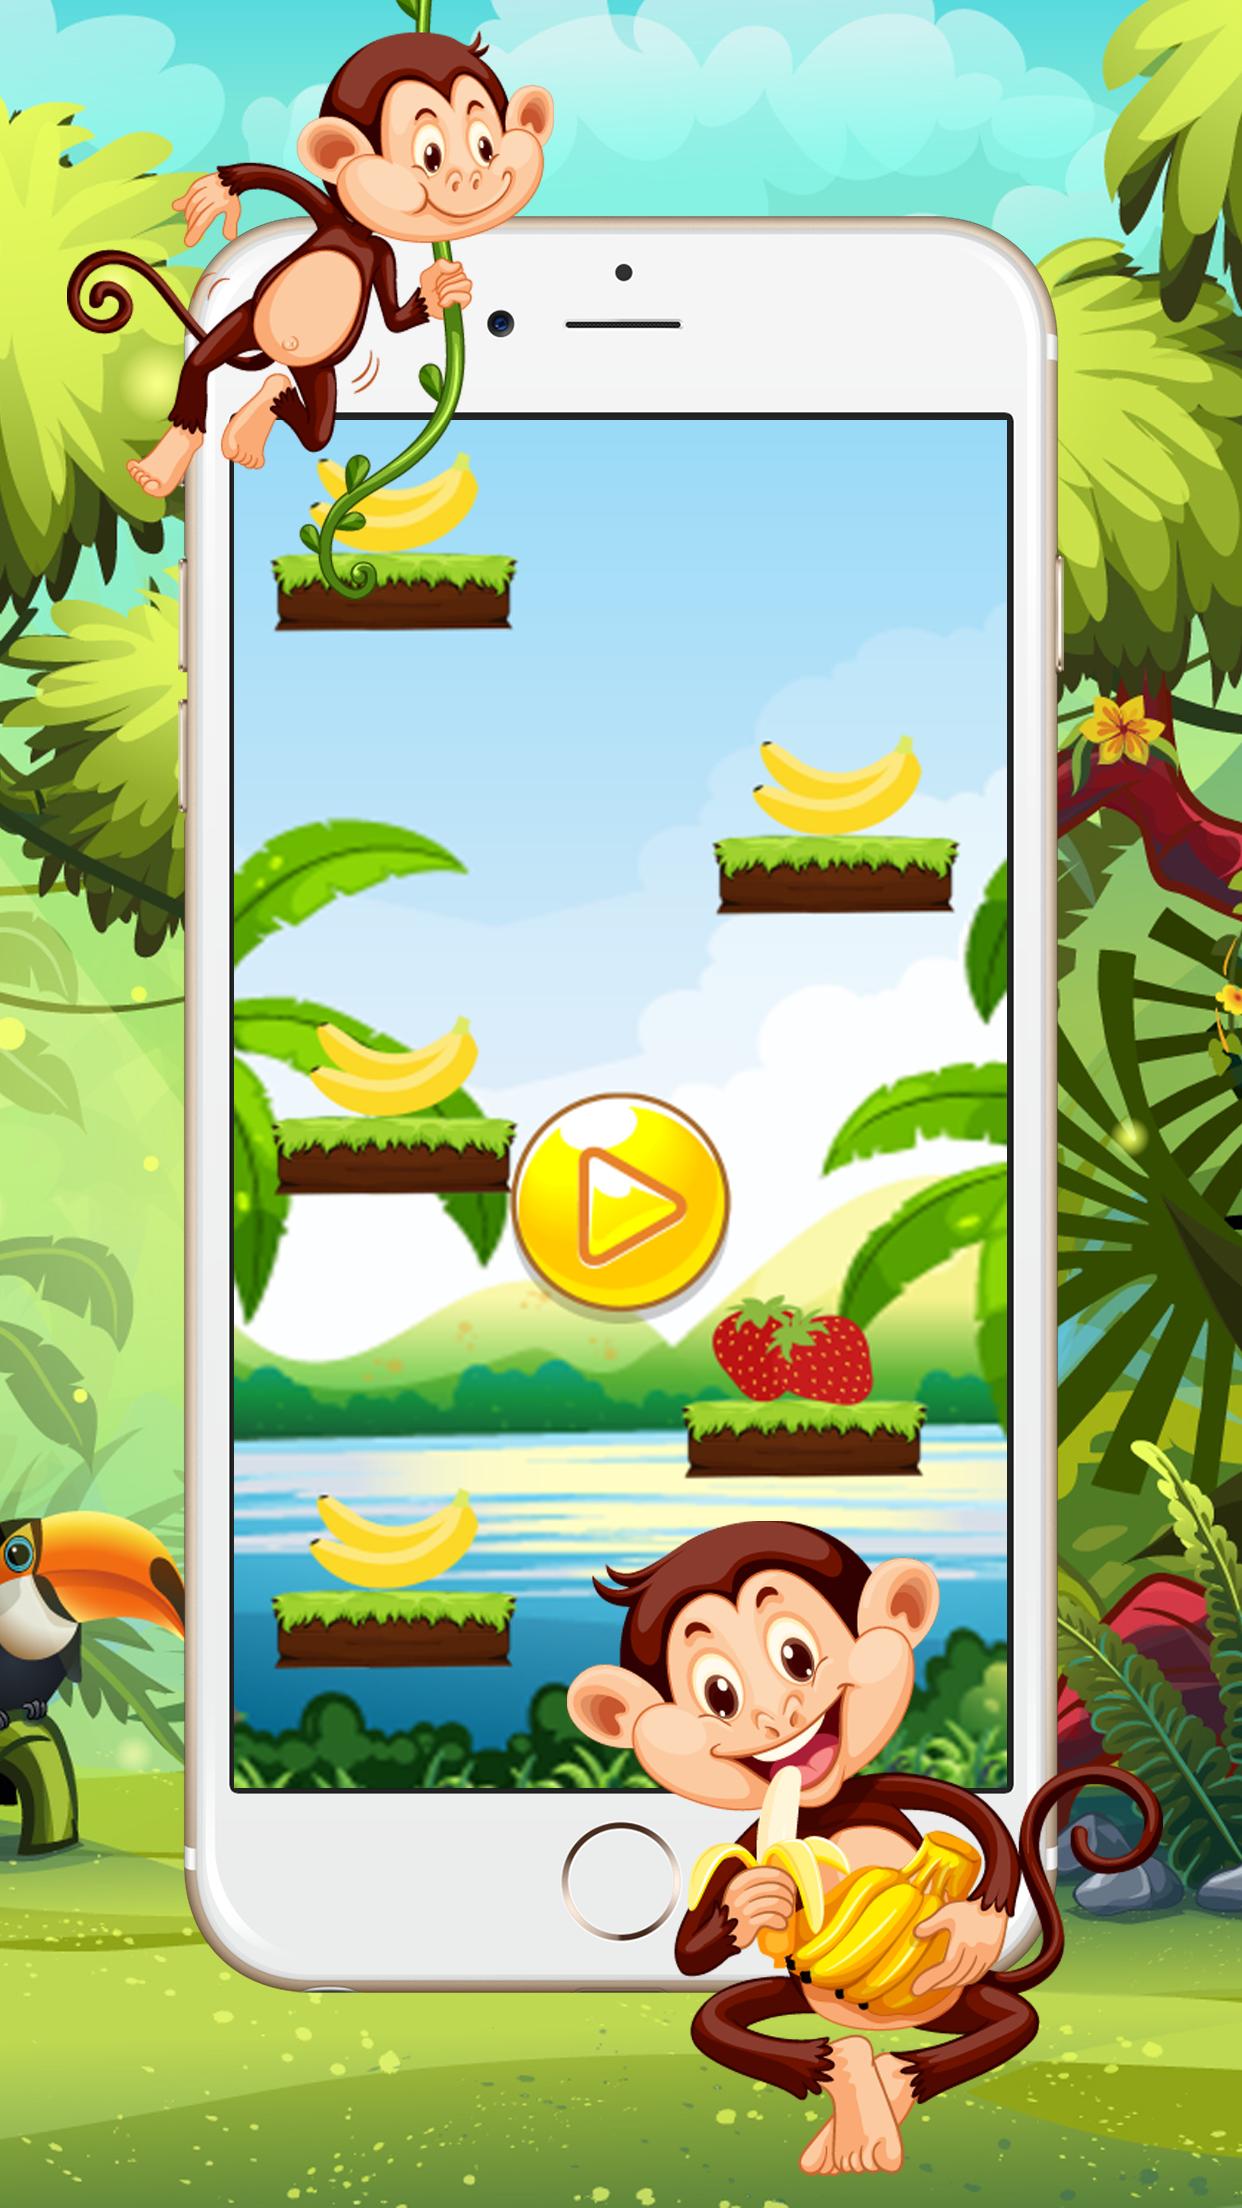 Обезьяна прыгает по лианам игра. Прыгающая обезьяна игра. Игра про обезьян. Игра обезьяна и бананы. Популярная игра с обезьянкой.